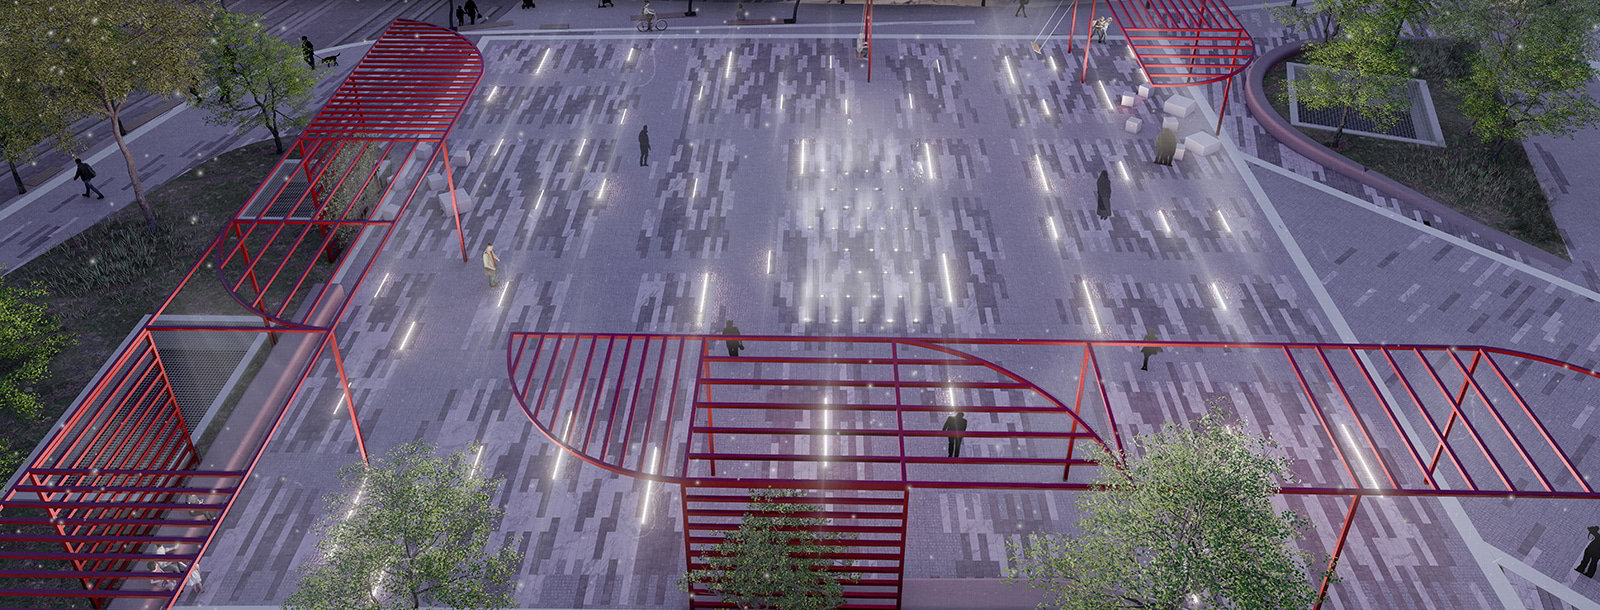 Archisearch Έπαινος στον Αρχιτεκτονικό Διαγωνισμό Ιδεών για την ανάπλαση του κοινόχρηστου χώρου και της ευρύτερης περιοχής του Νέου Σταθμού Μετρό Κυψέλη | Γιάννης Παναγιώτου, Έλενα Κανάκη, Αναστάσιος Μπαλατσούκας, Εύα Γκαντούνα, Γεώργιος Μπρισιμης